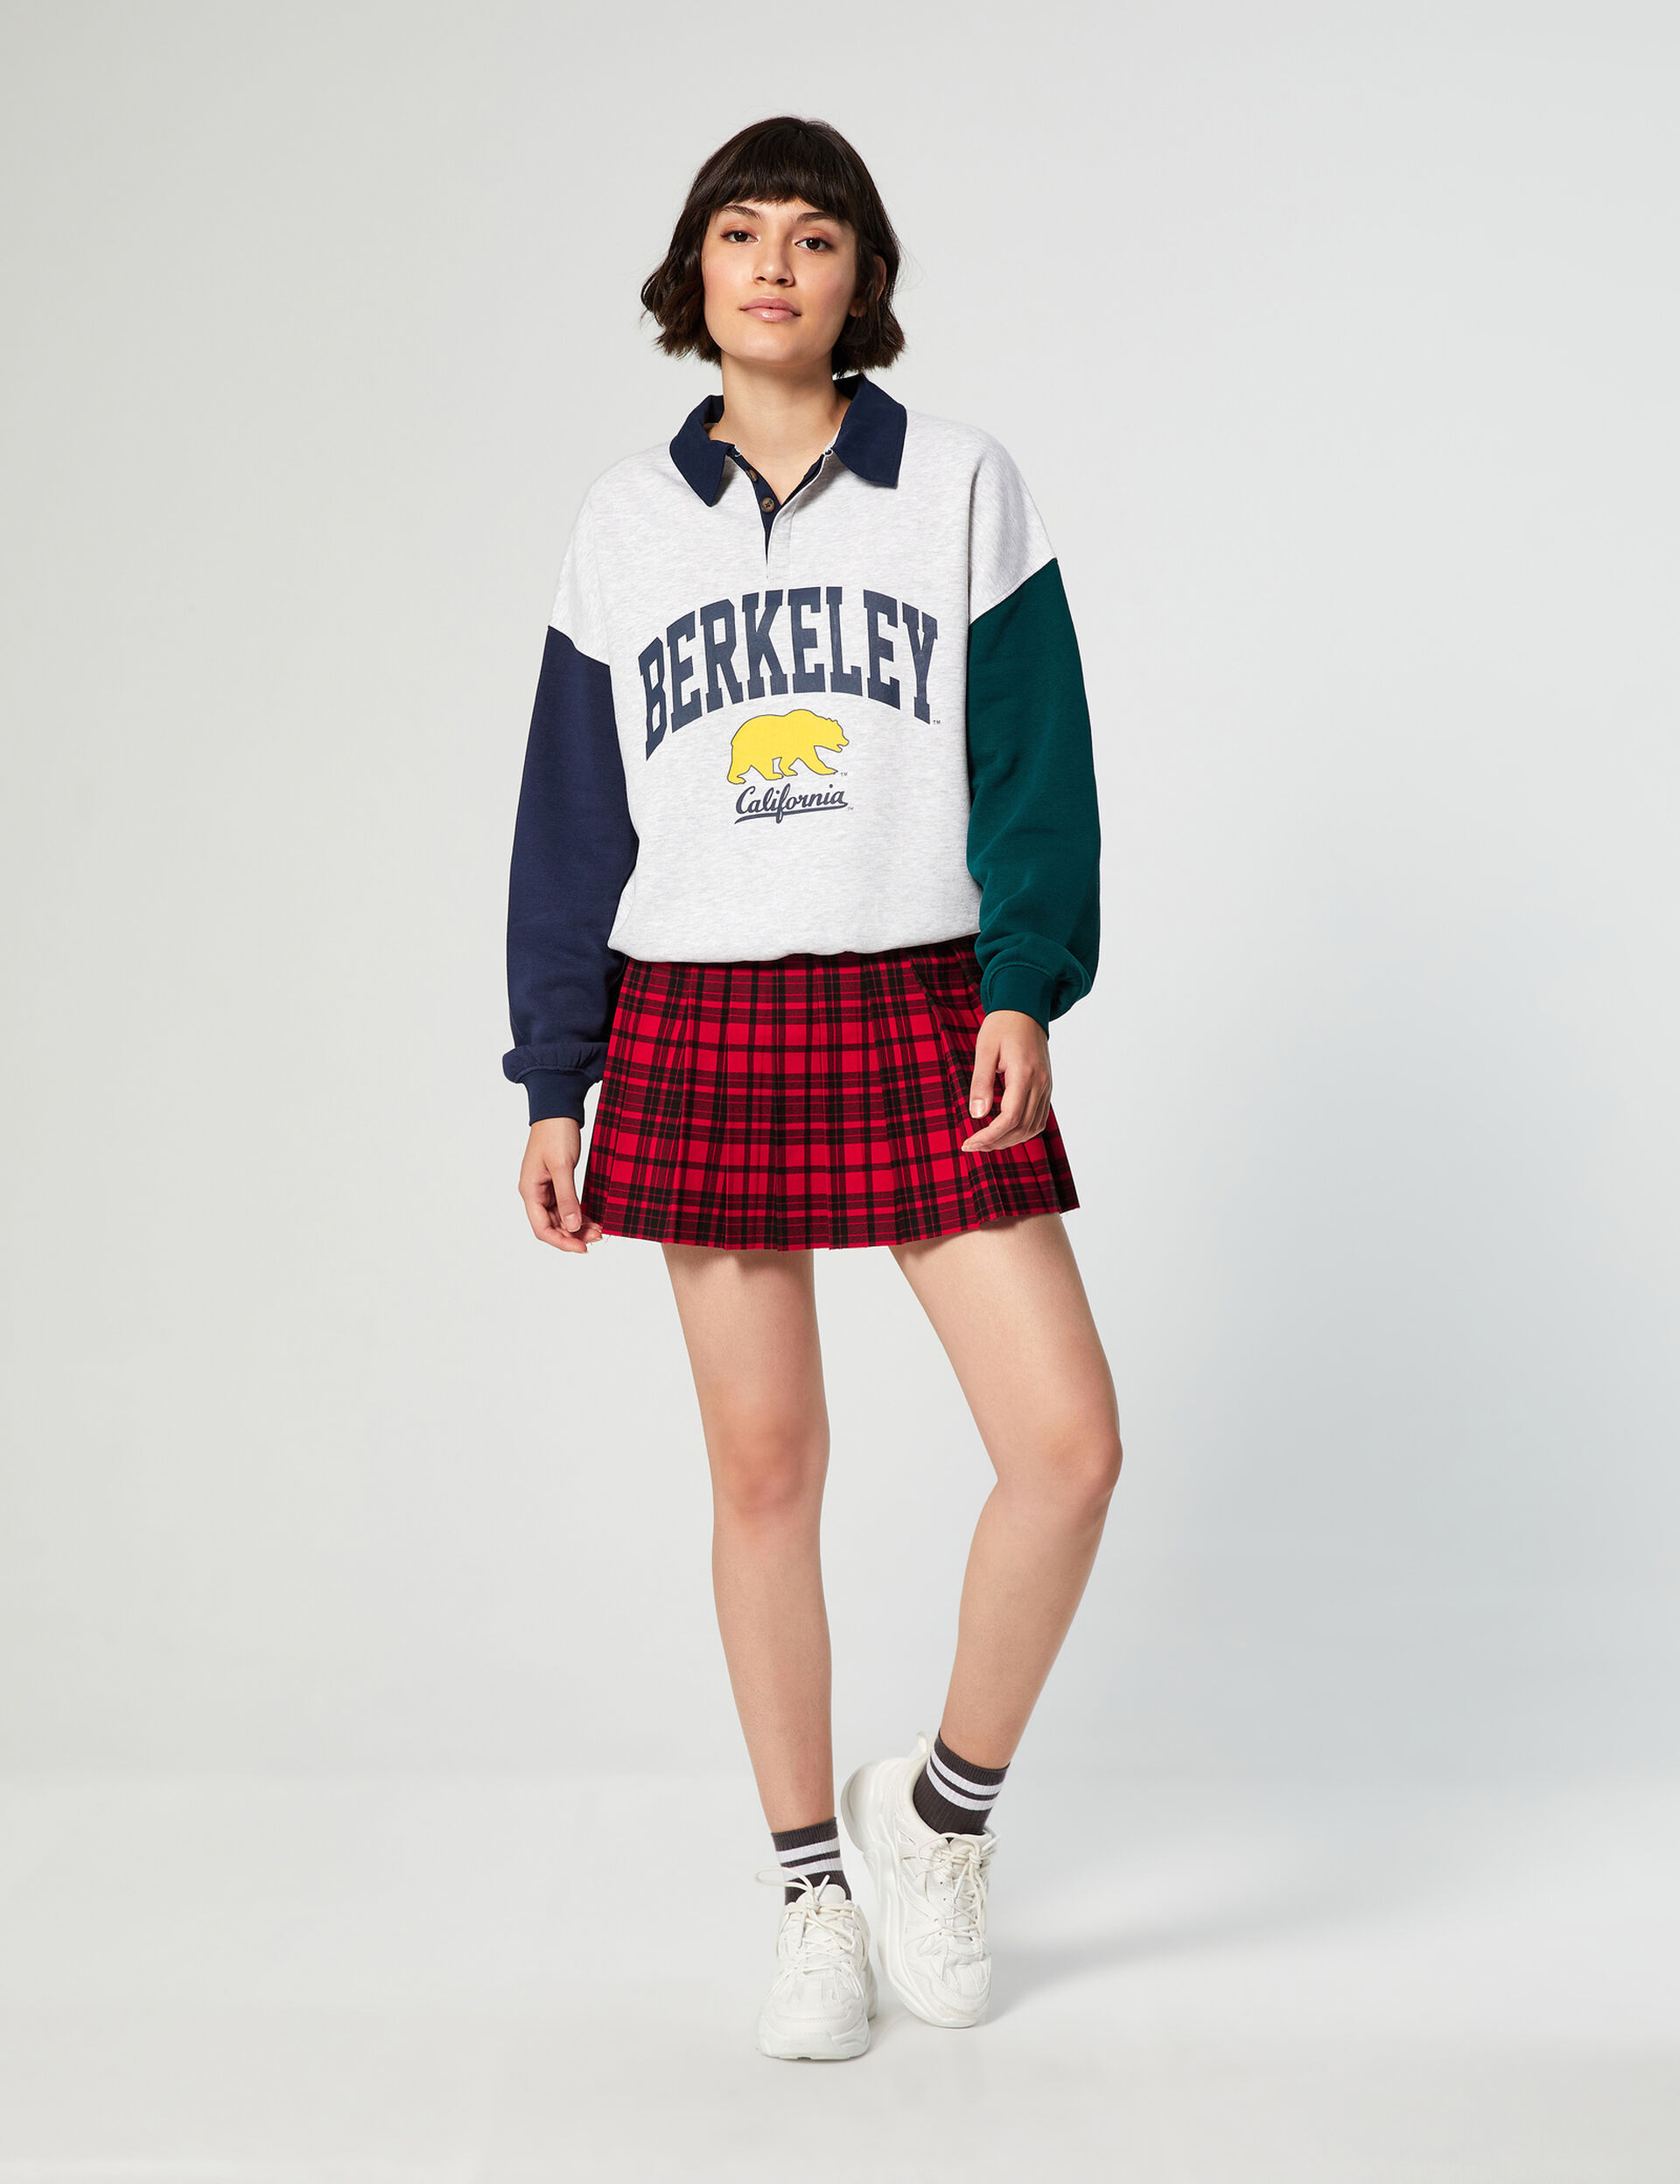 Berkeley sweatshirt